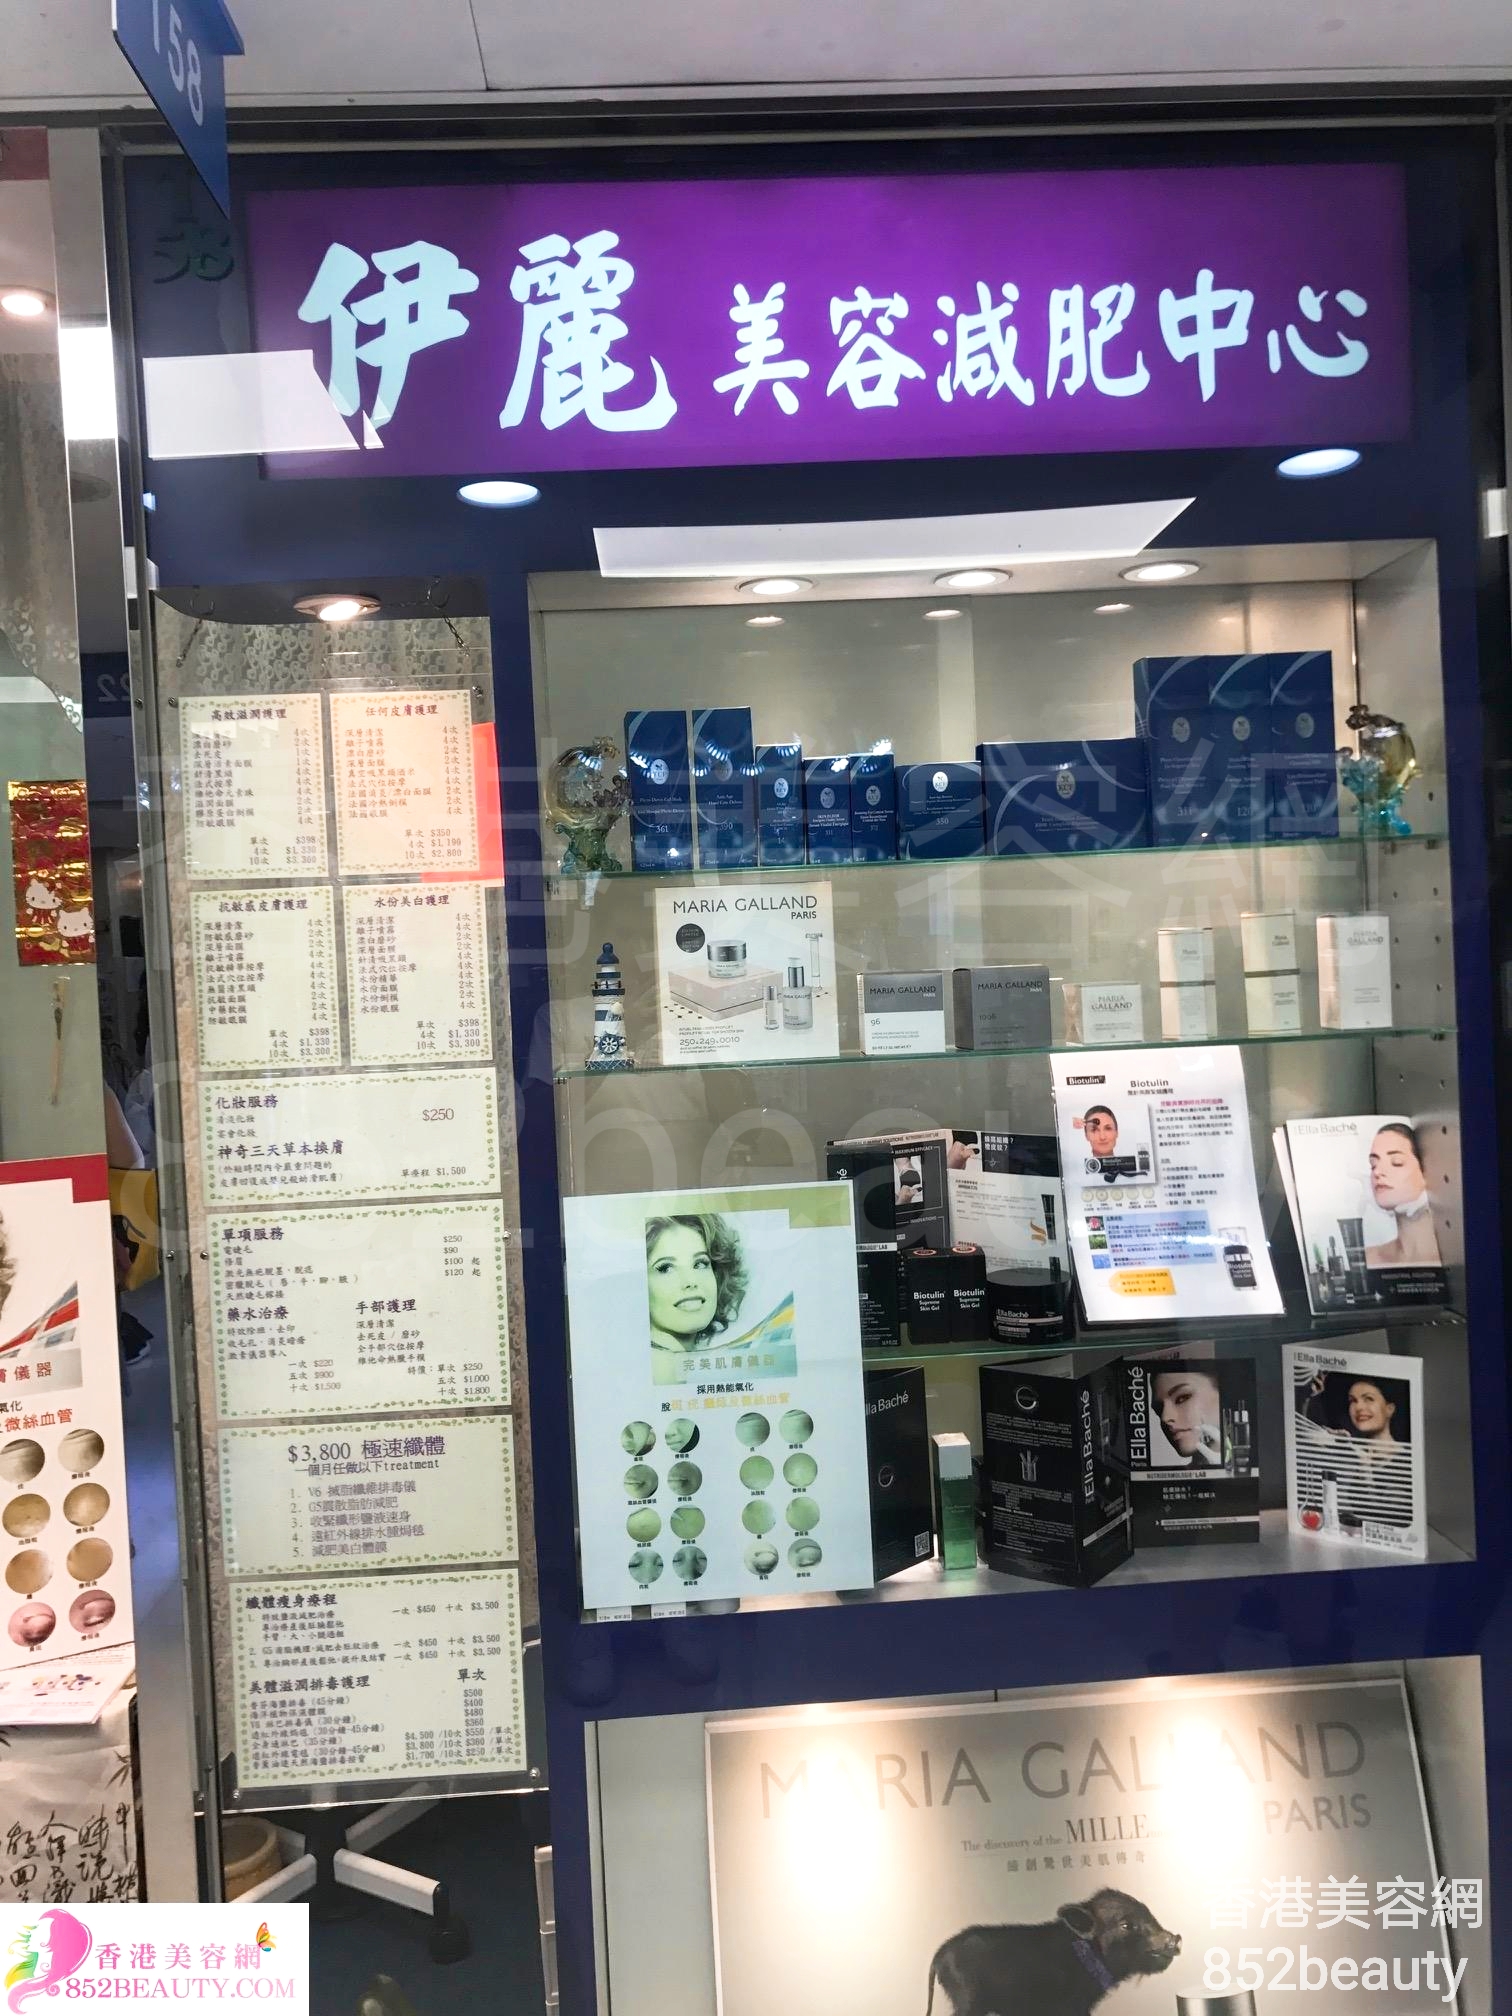 香港美容網 Hong Kong Beauty Salon 美容院 / 美容師: 伊麗美容減肥中心